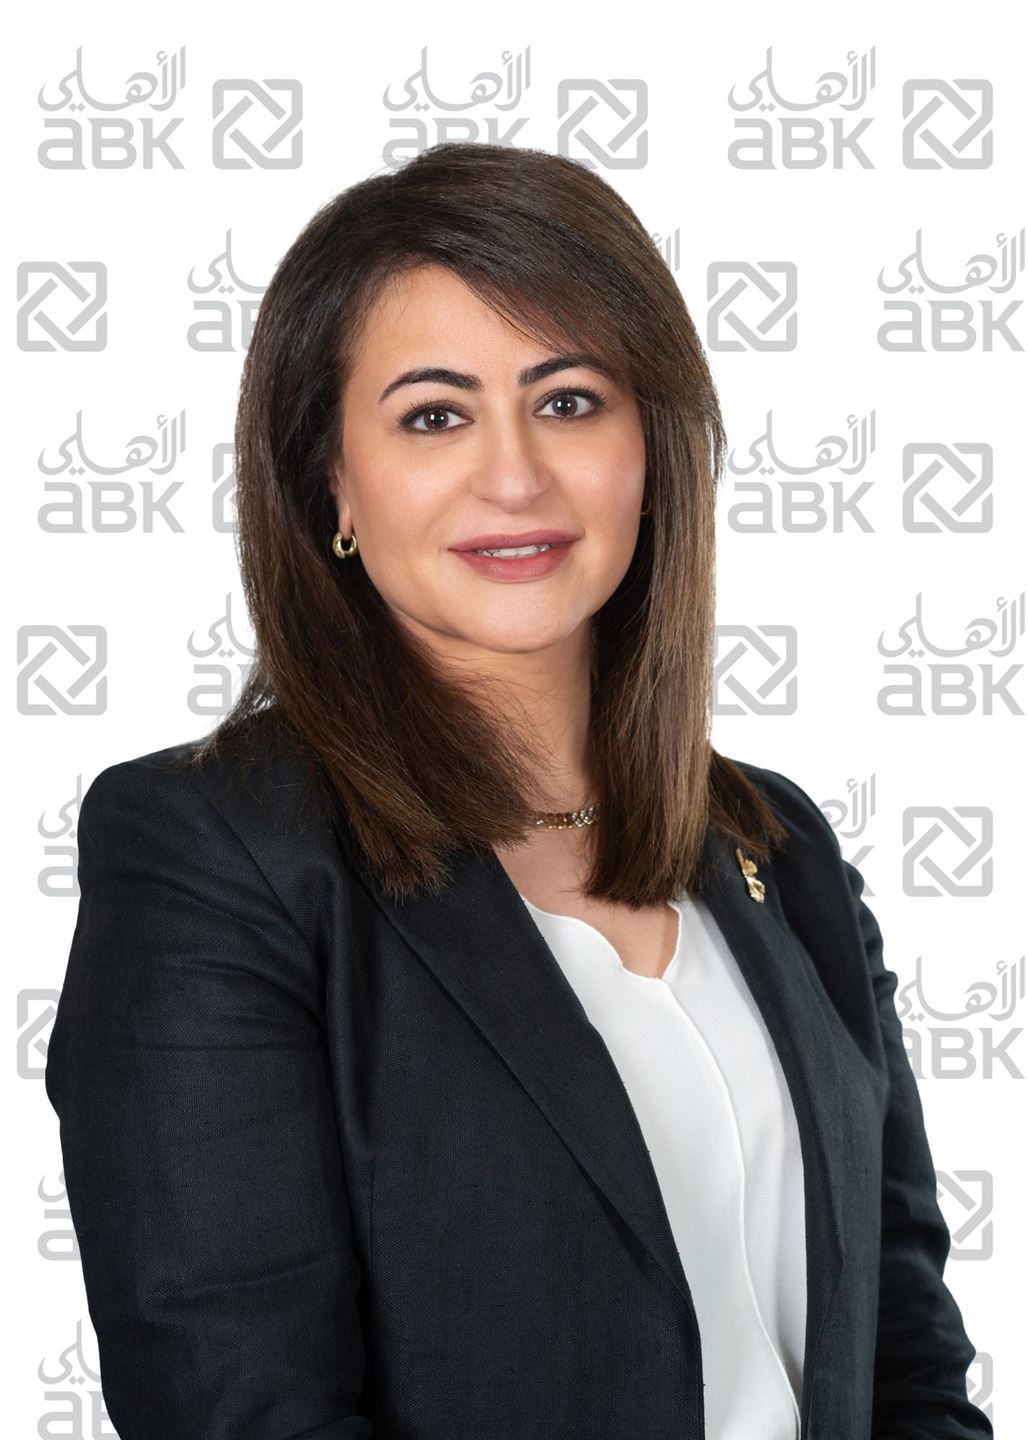 السيدة/ أفراح الاربش مدير عام إدارة الموارد البشرية بالإنابة في البنك الأهلي الكويتي